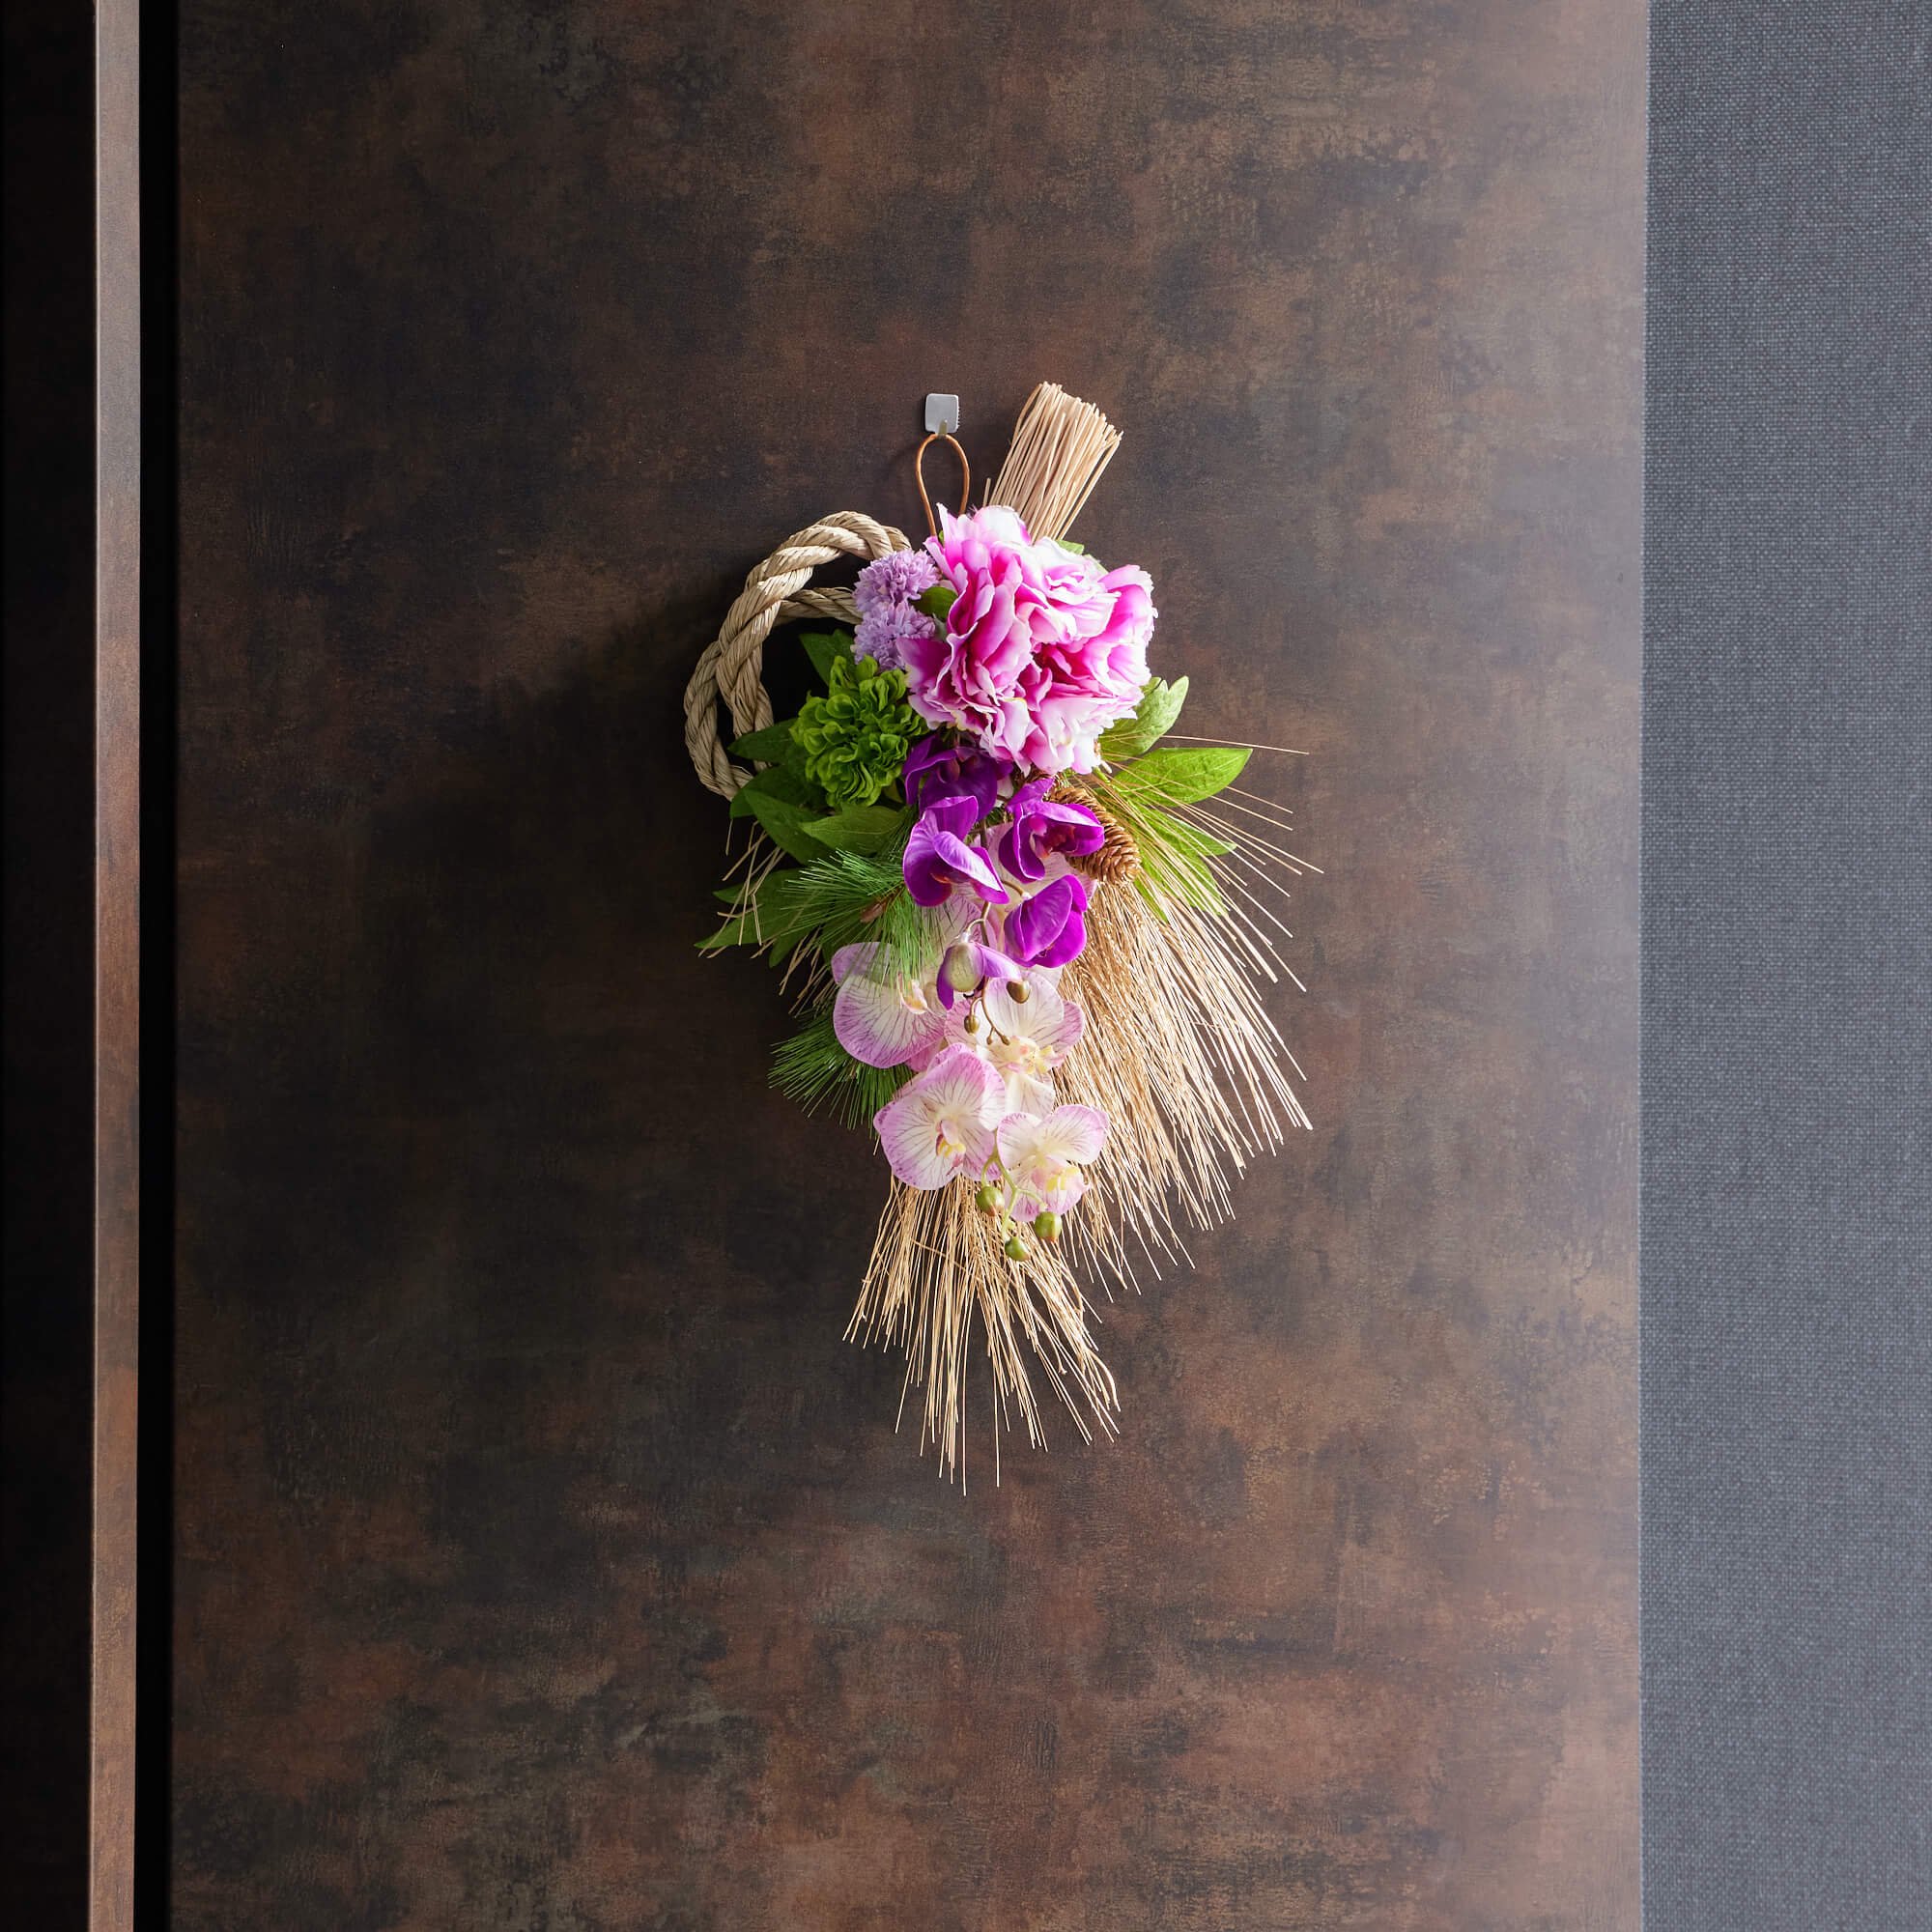 ピオニー ファレノプシス お正月飾り  フラワーアレンジメント 造花 アーティフィシャルフラワー アートフラワー